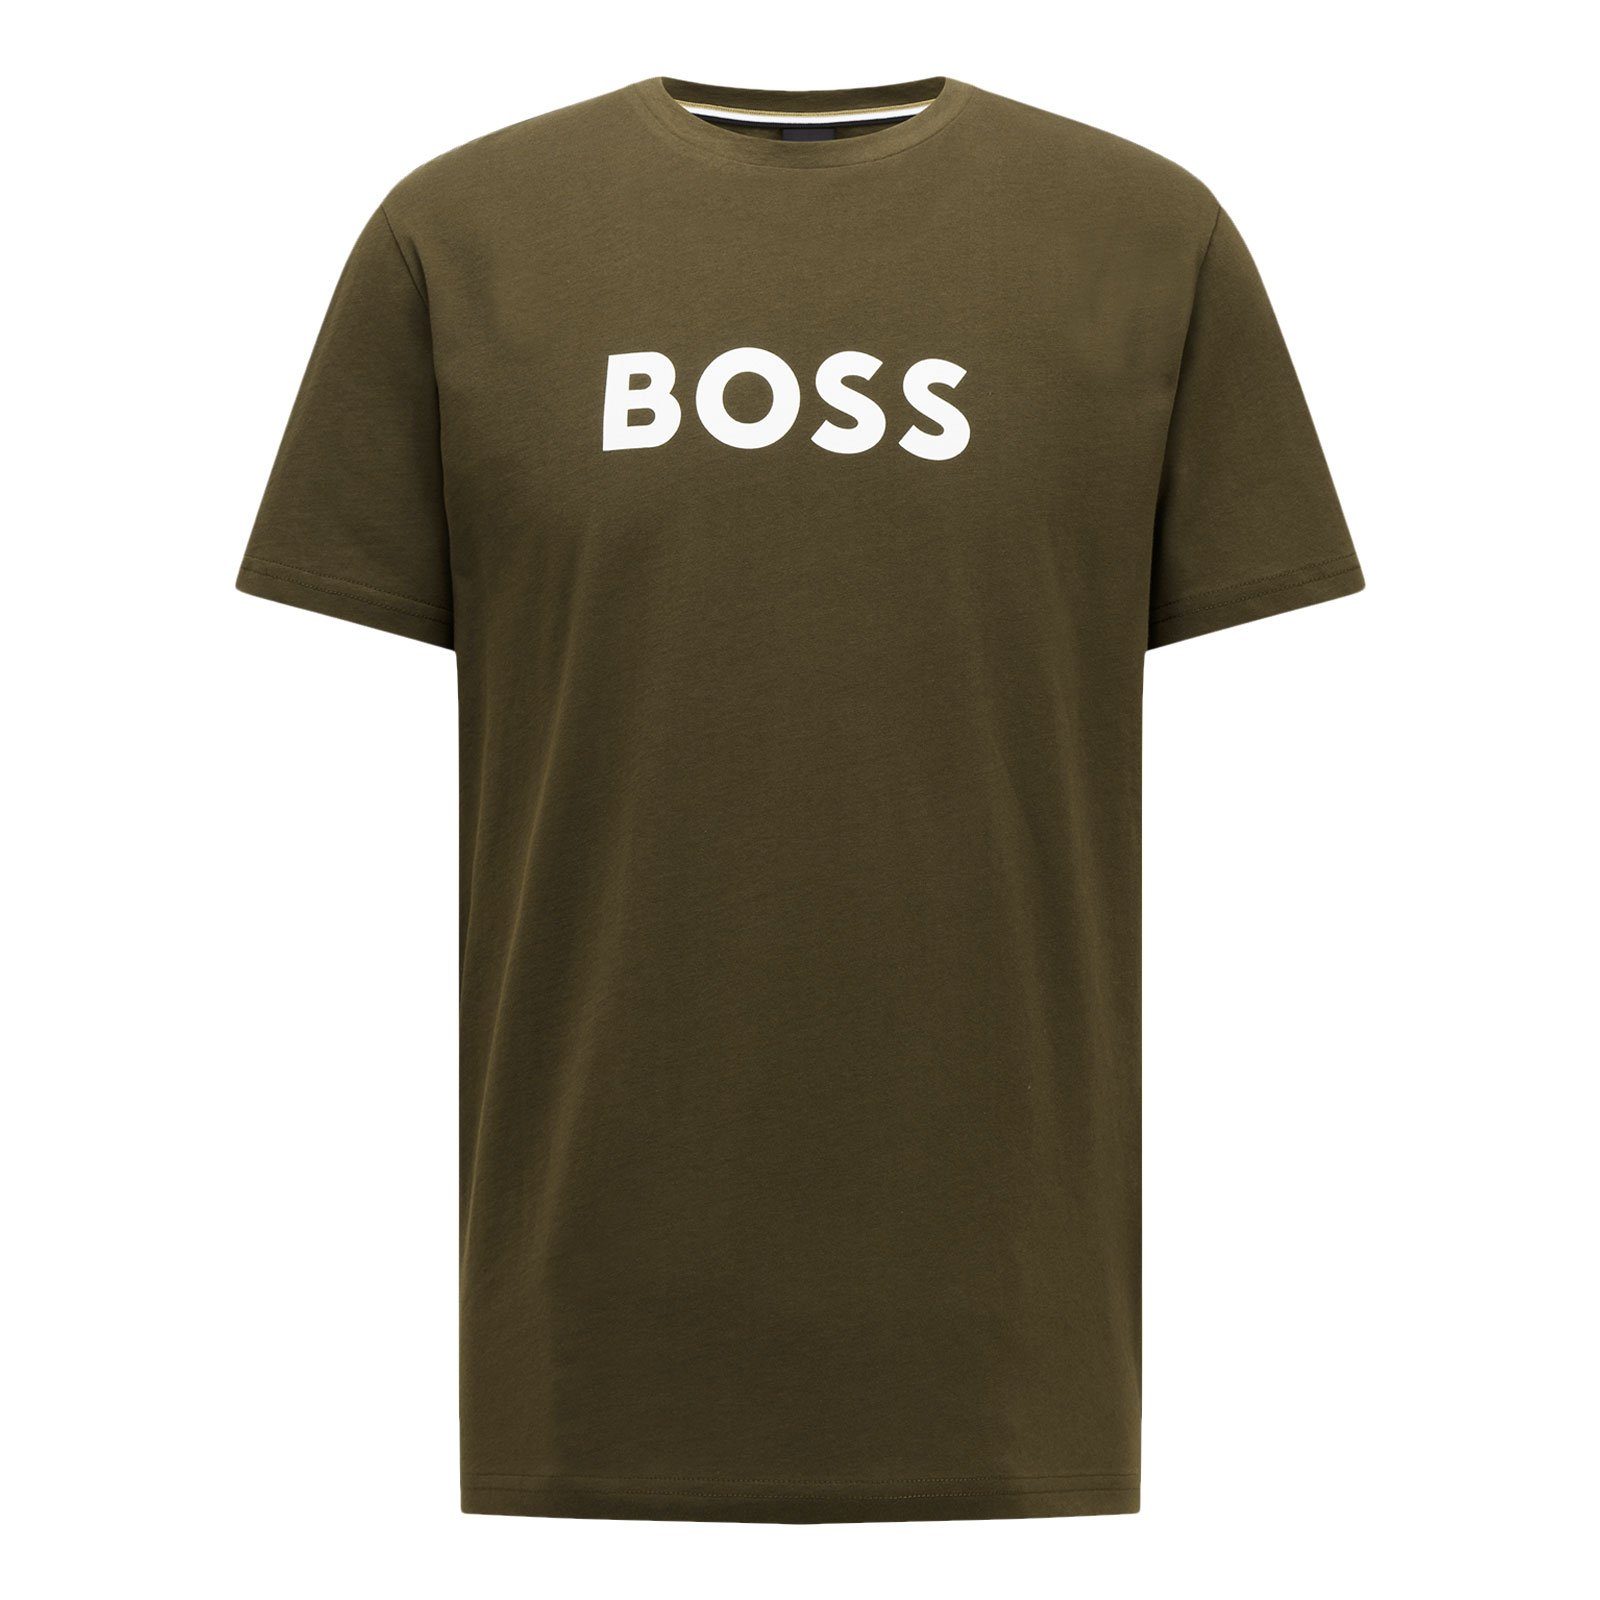 BOSS T-Shirt RN Sun Protection green auf großem Brust Markenprint der mit 308 dark